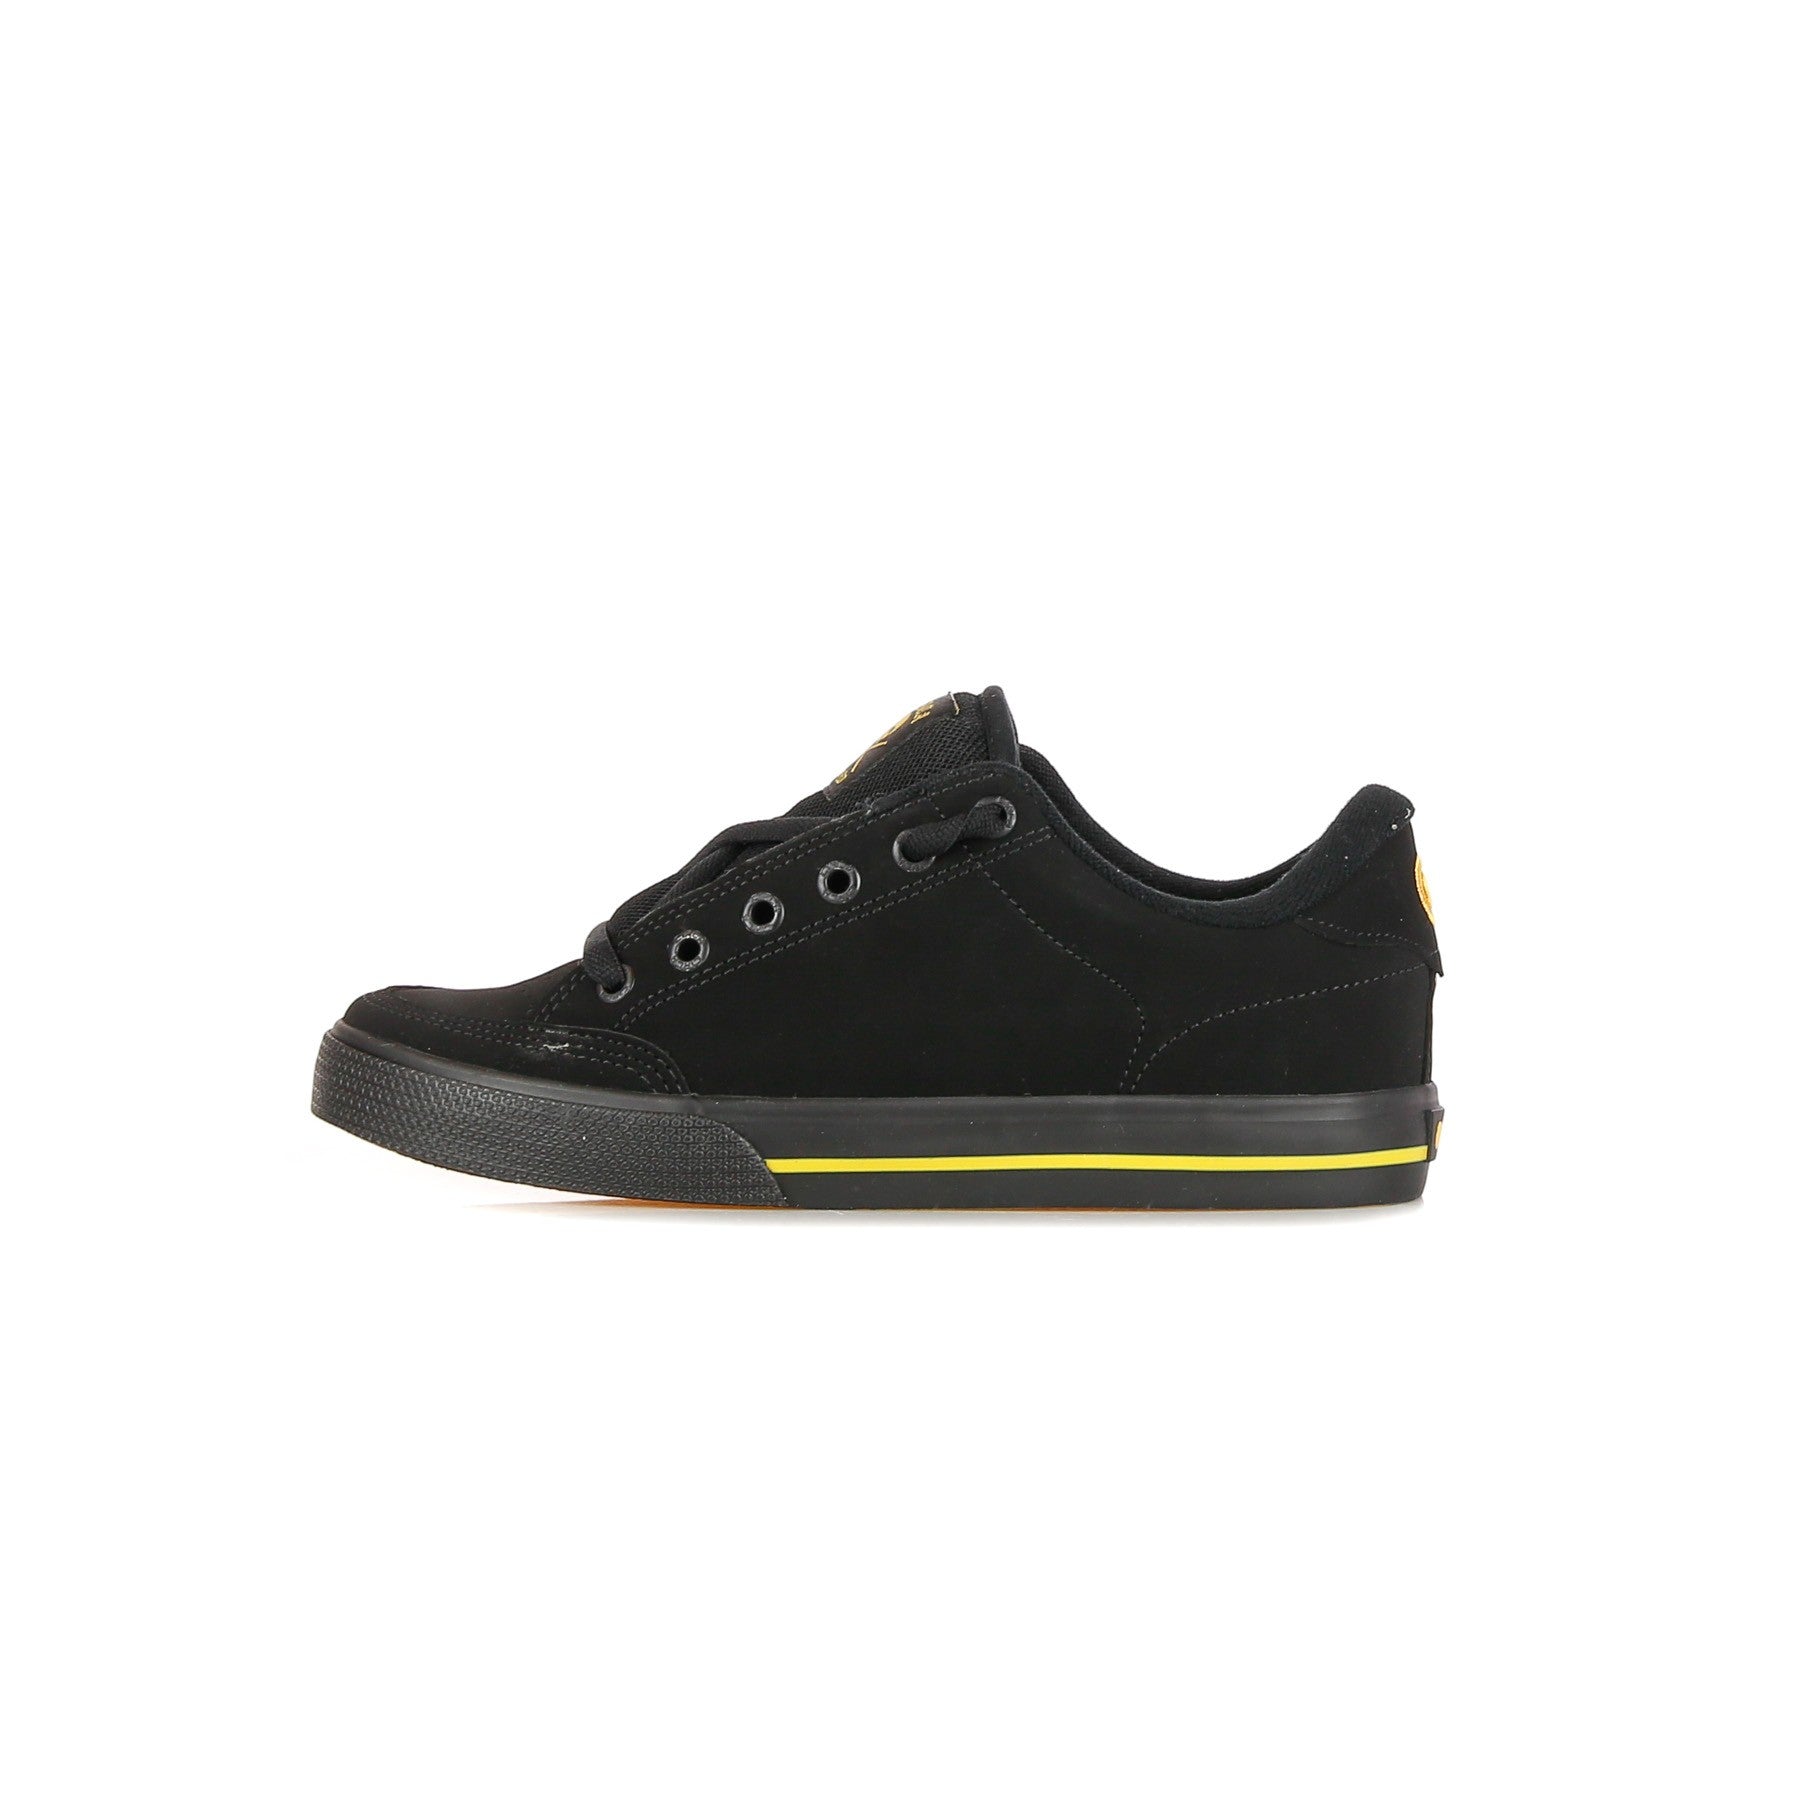 Low Men's Shoe Lopez 50 Pro Black/black/gold